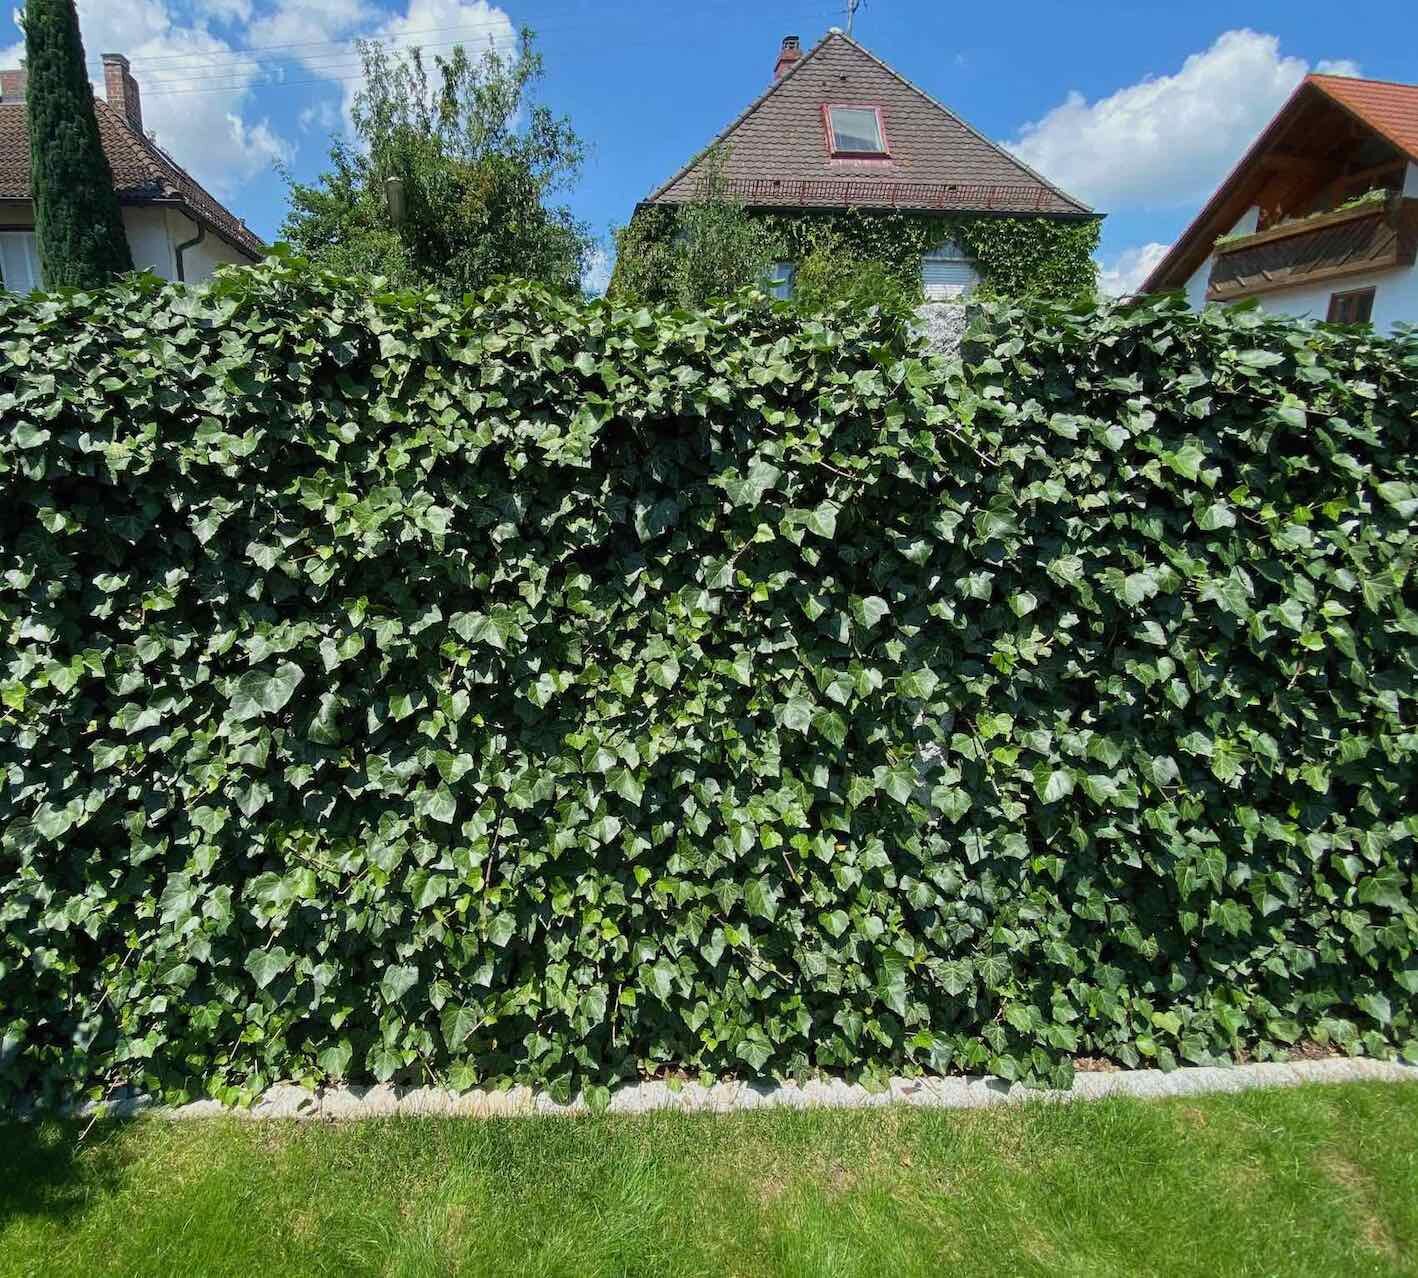 Efeuhecken kommen sowohl mit Schatten und Sonne im Garten zurecht und bilden eine etwa 20 cm schlanke Wand